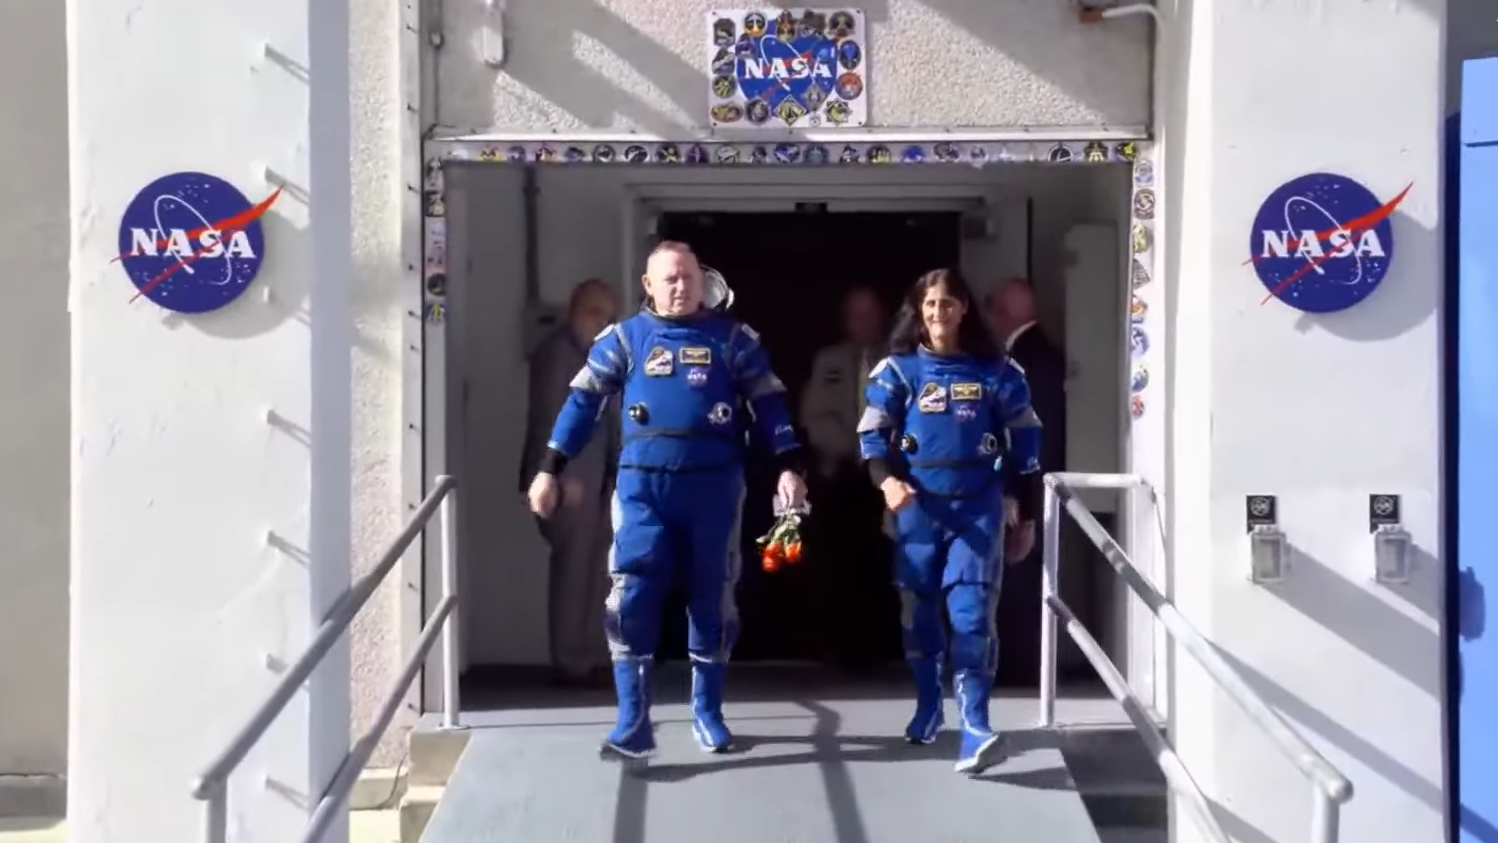 Dos astronautas con trajes espaciales azules caminan uno al lado del otro y sonríen.